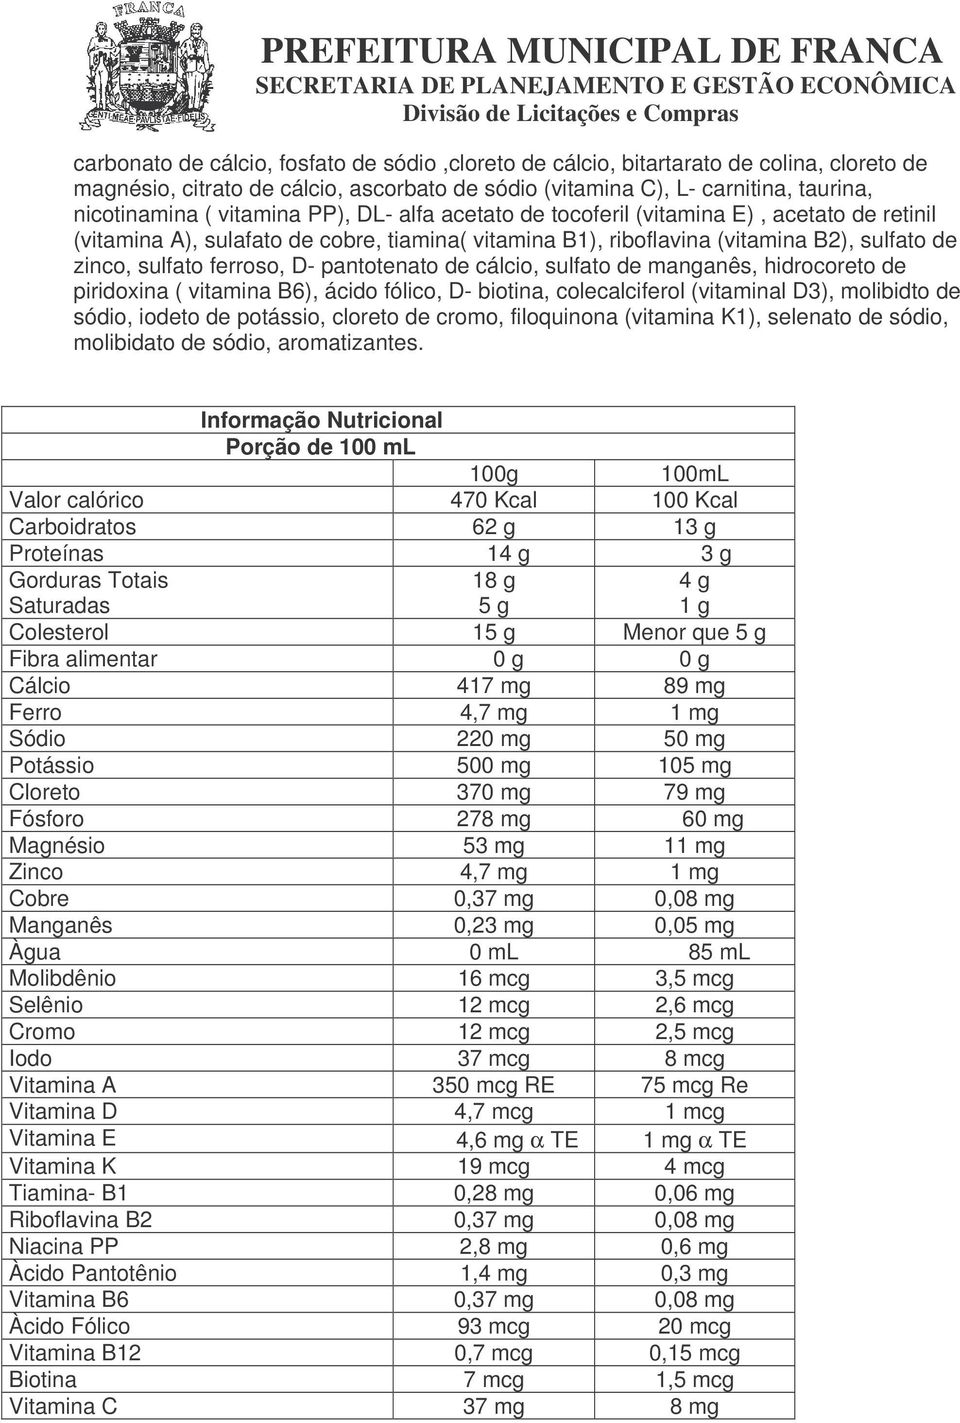 pantotenato de cálcio, sulfato de manganês, hidrocoreto de piridoxina ( vitamina B6), ácido fólico, D- biotina, colecalciferol (vitaminal D3), molibidto de sódio, iodeto de potássio, cloreto de